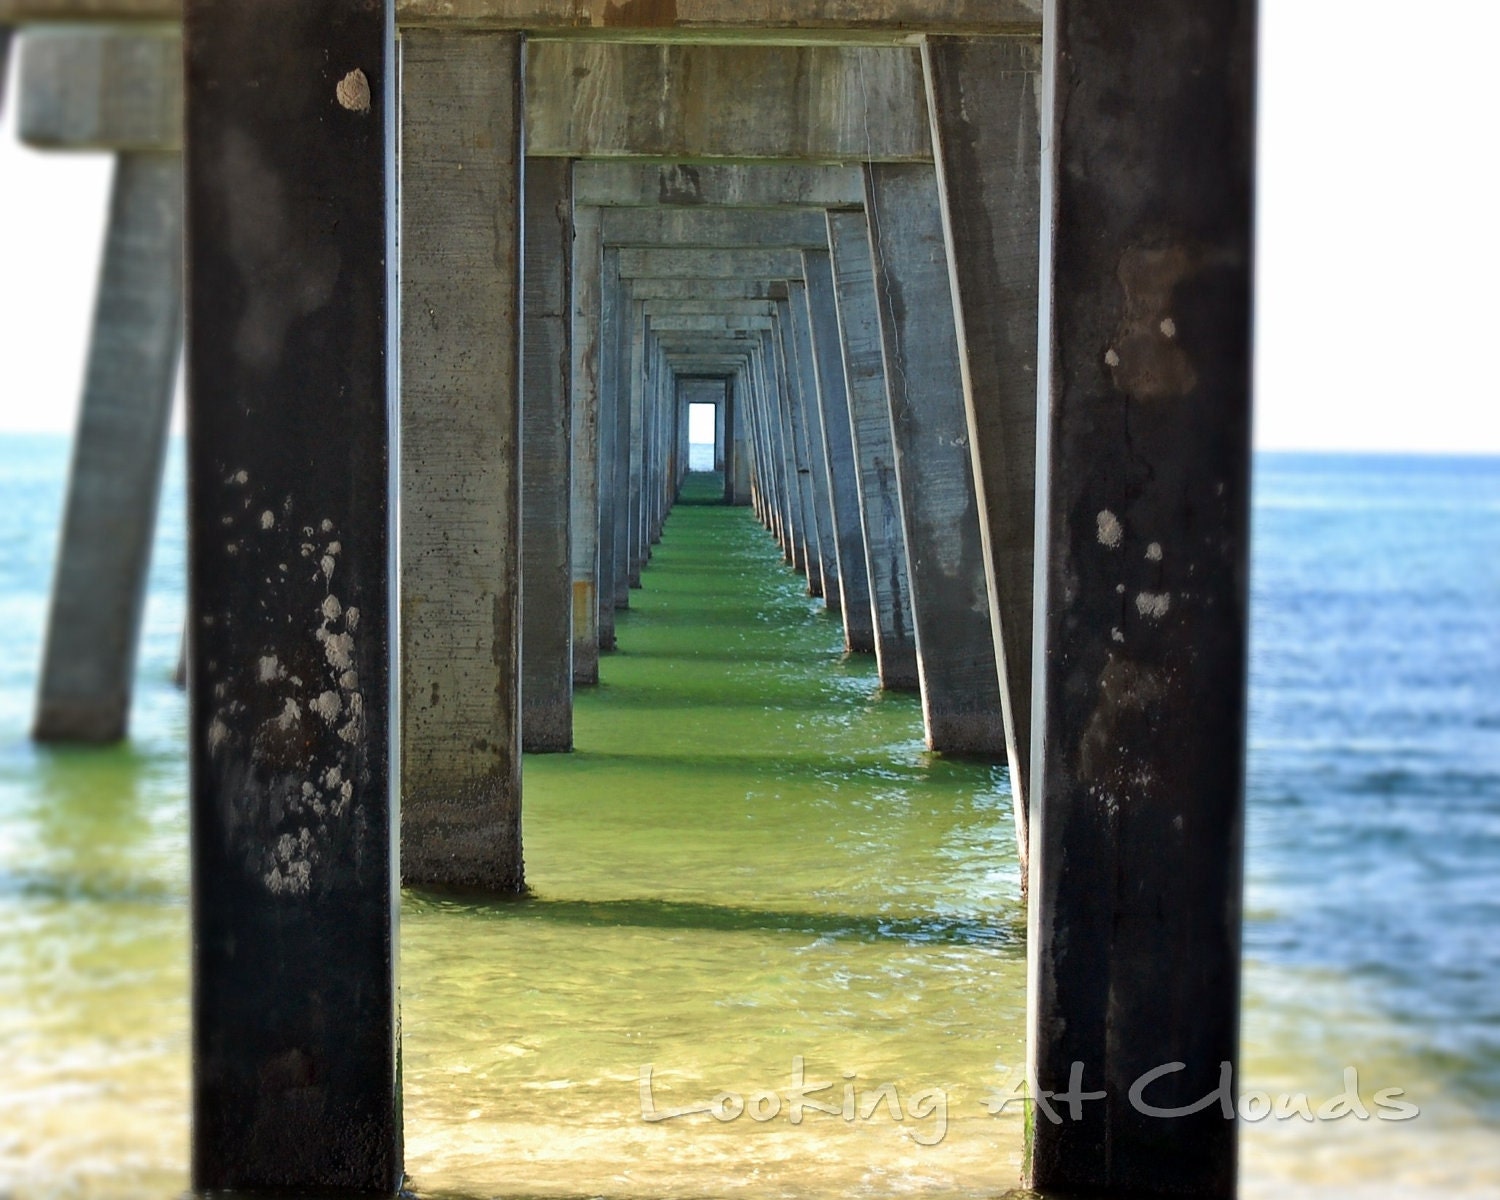 Under the Pier blue green ocean view beach nautical perspective zen 8 x 10 fine art photograph - LookingAtClouds